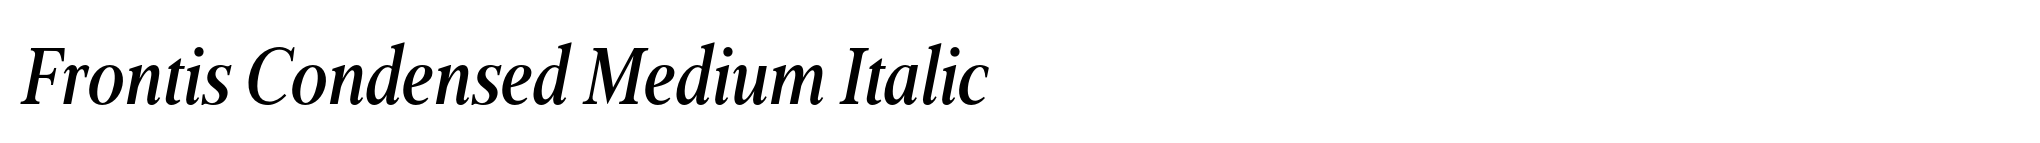 Frontis Condensed Medium Italic image